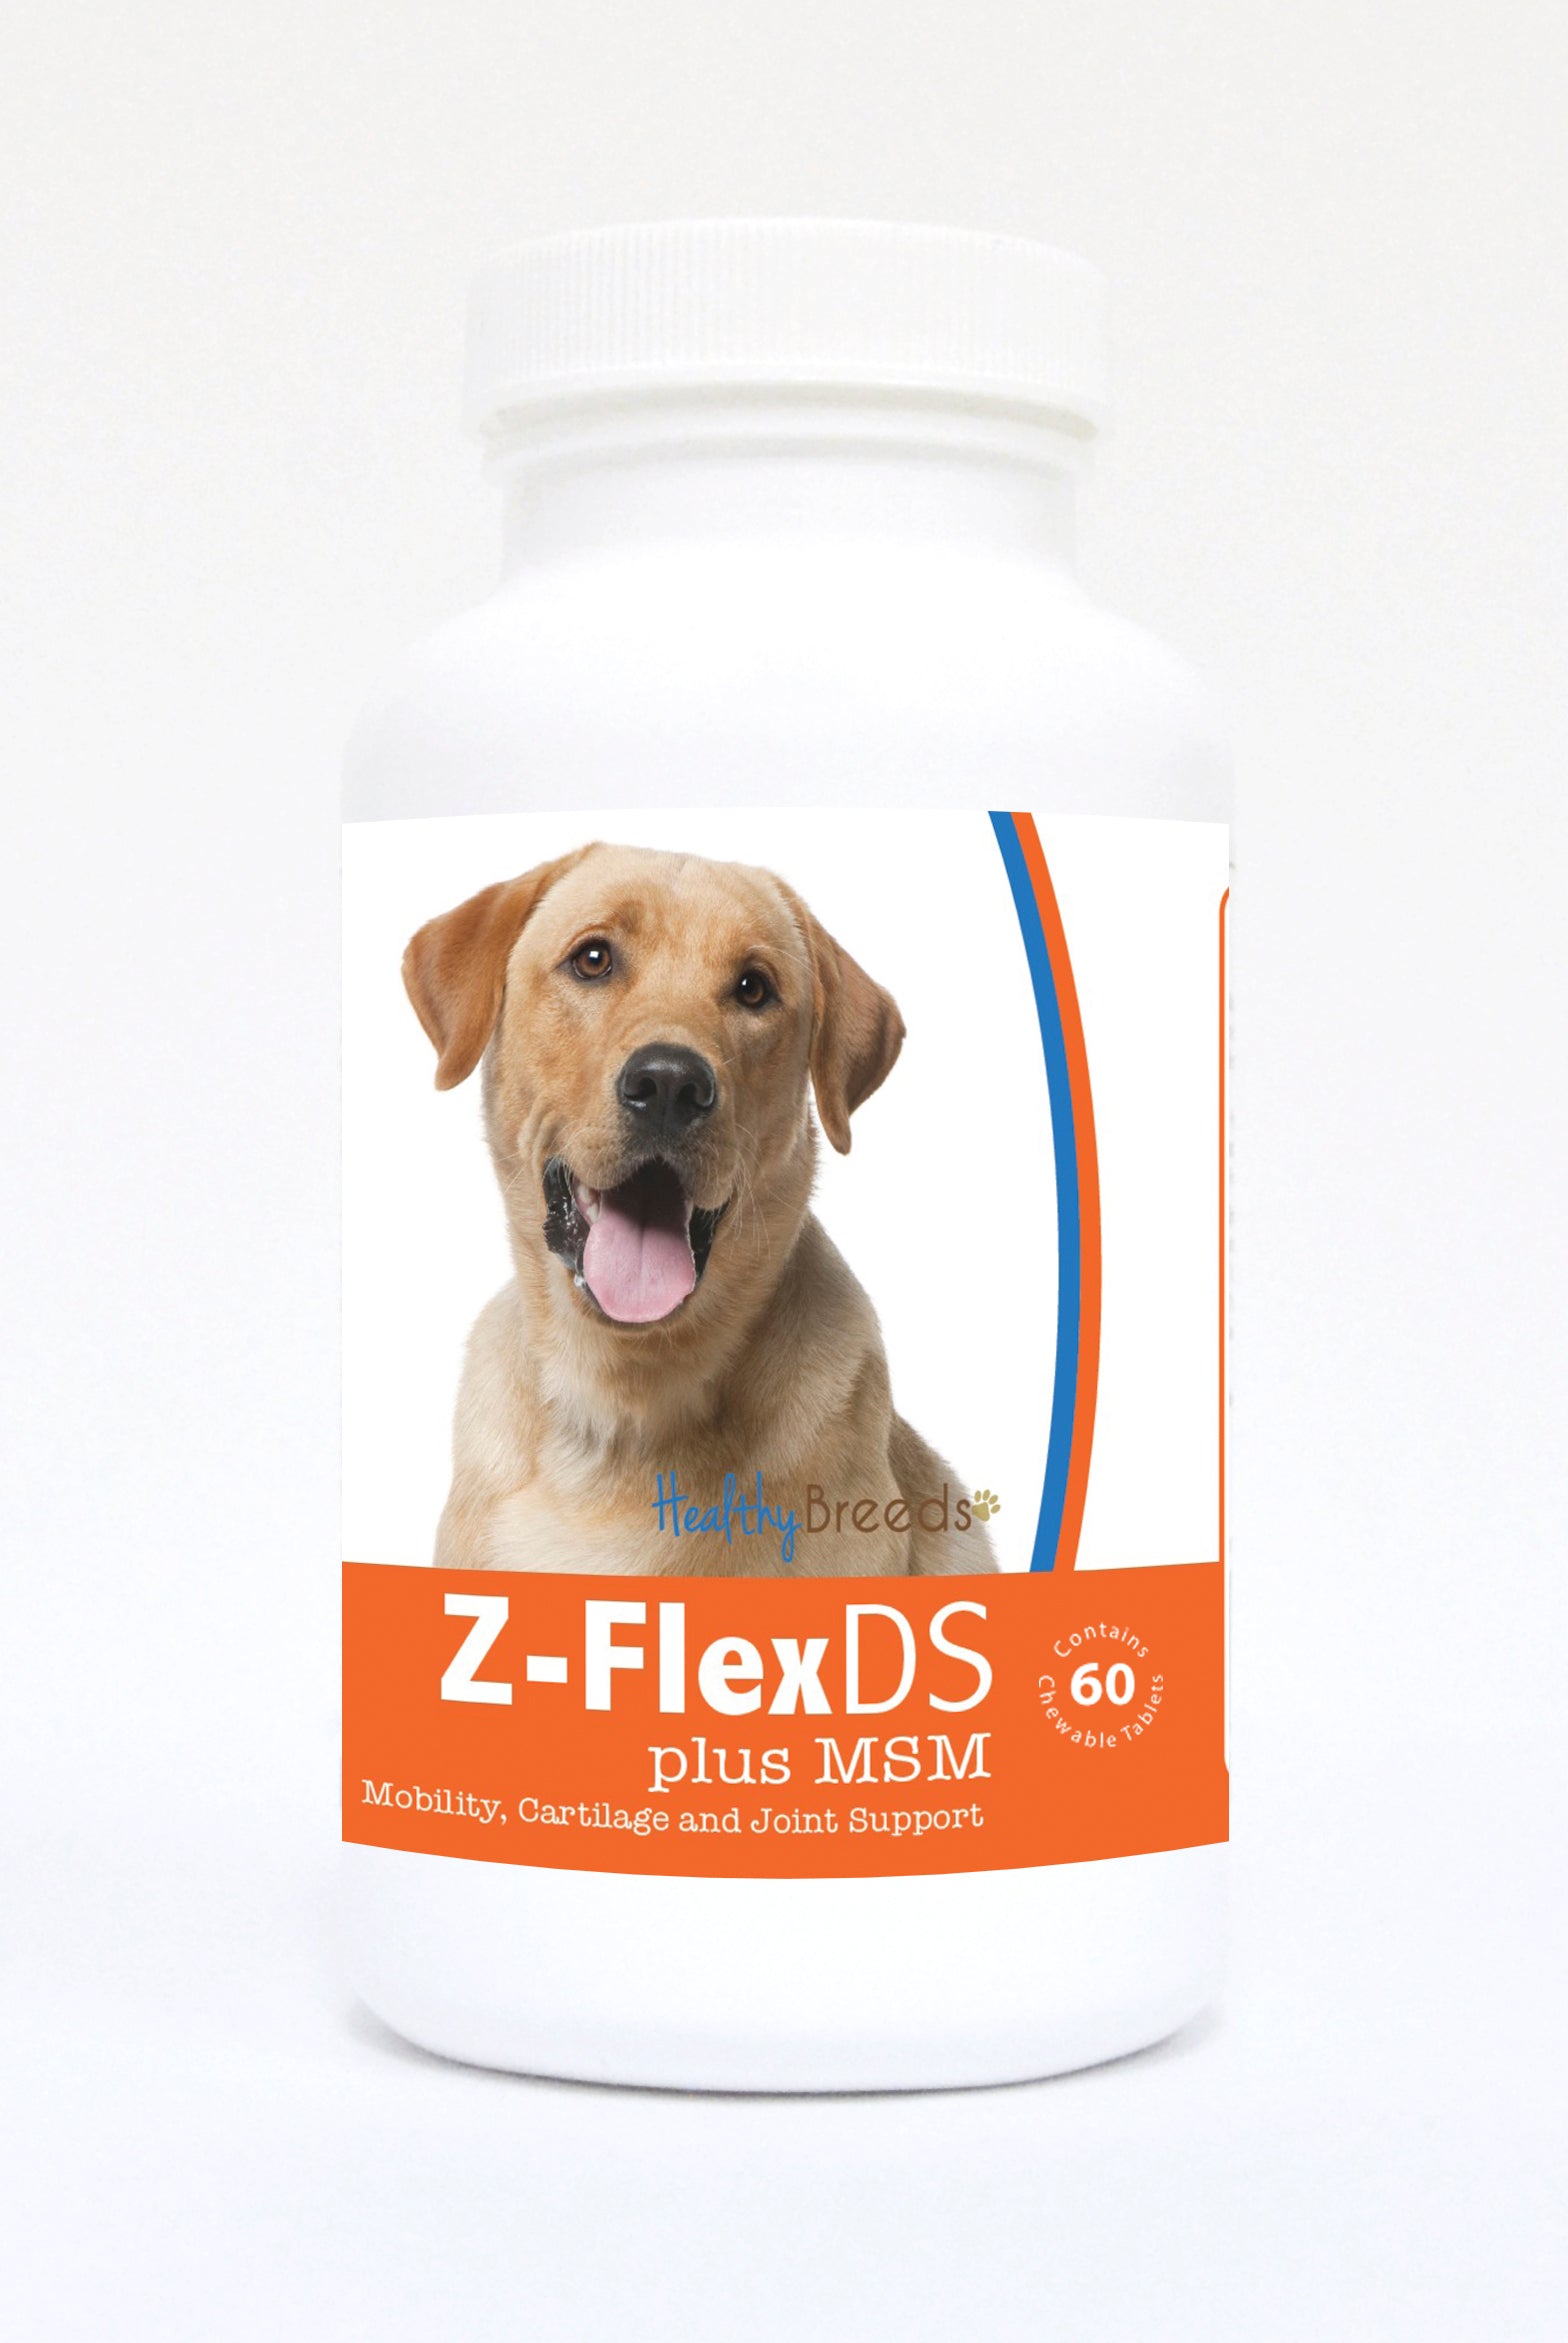 Labrador Retriever Z-FlexDS plus MSM Chewable Tablets 60 Count